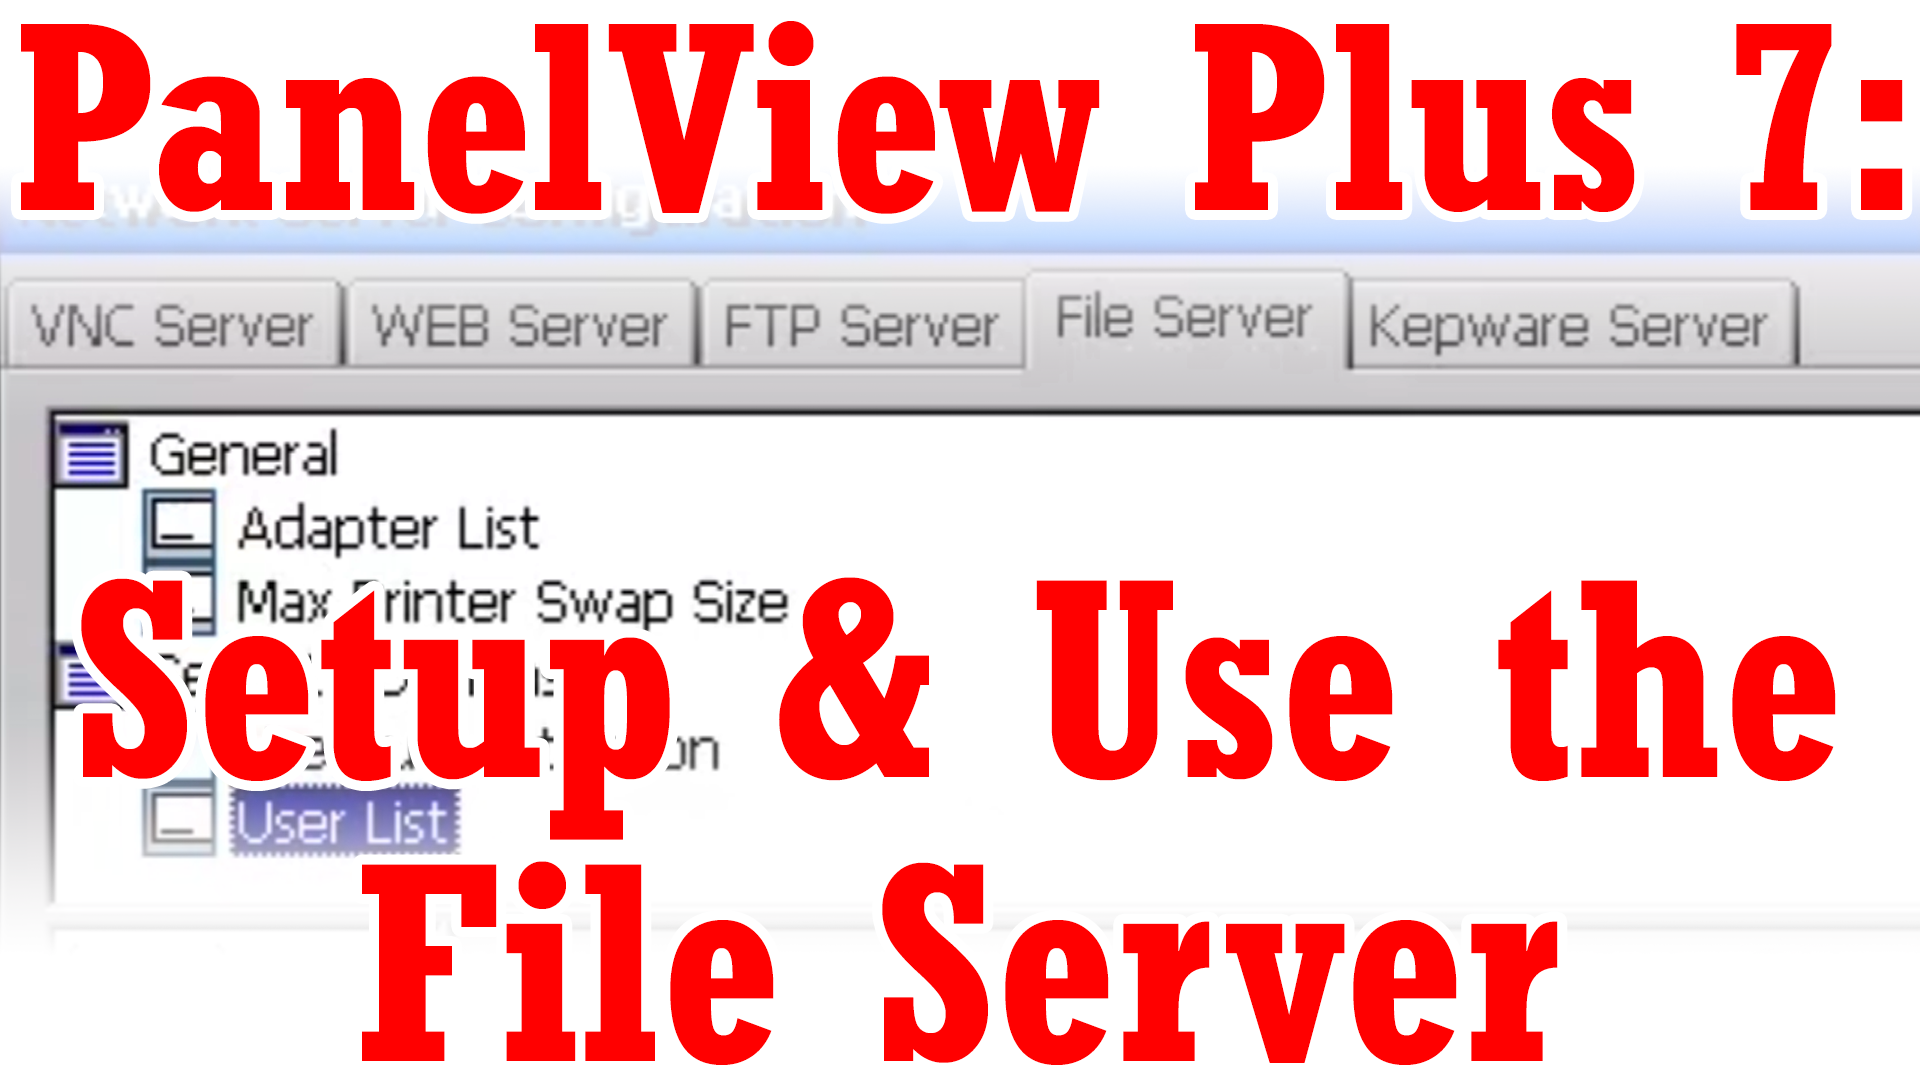 PanelView Plus 7 - Setup and Use File Server